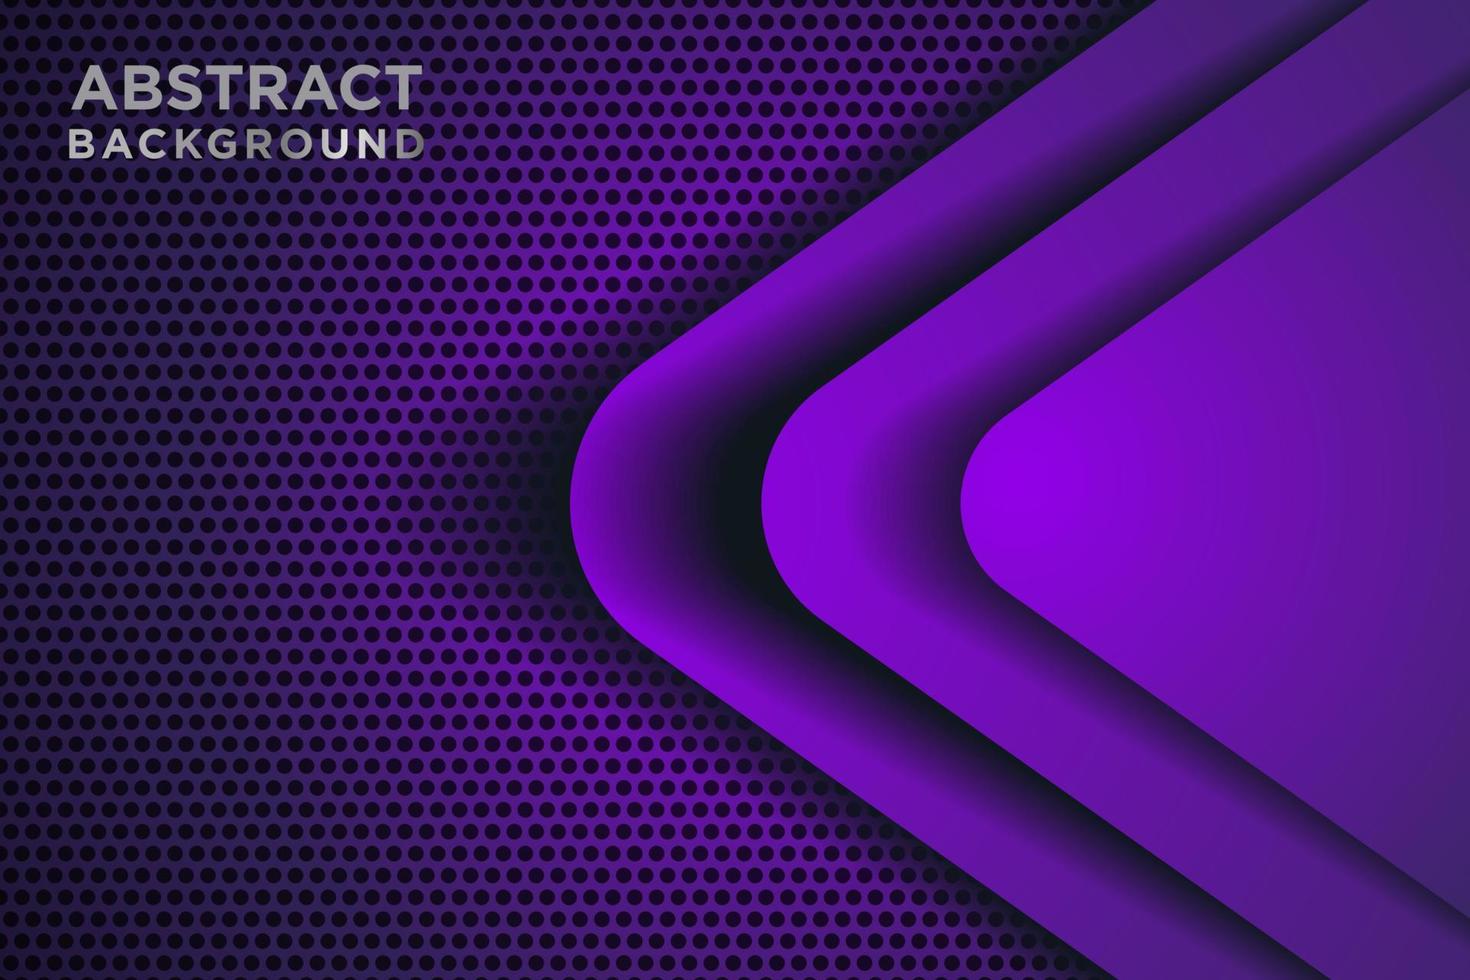 flèche violette abstraite direction 3d sur cercle maillage motif design illustration vectorielle de fond futuriste moderne. vecteur